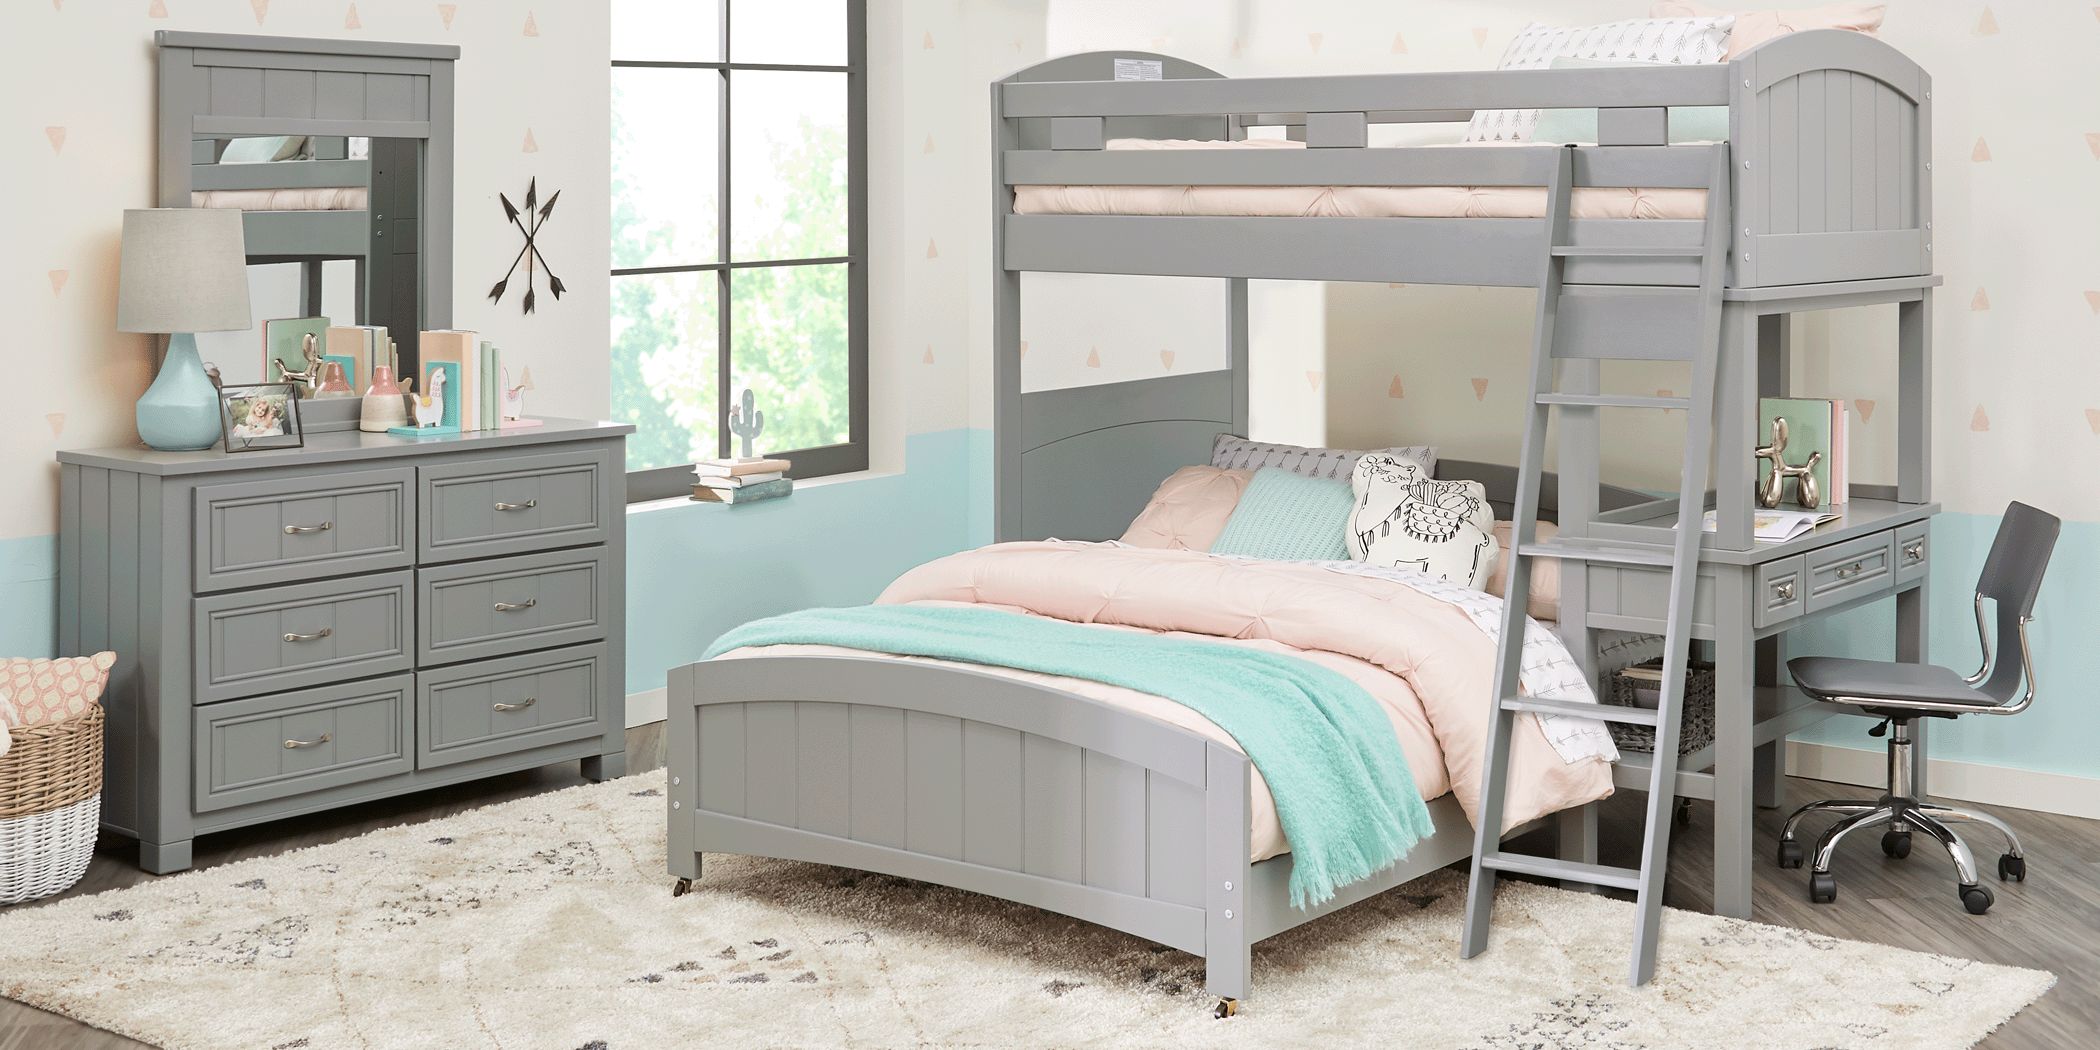 Loft Bunk Bed With Desk, Cottage Colors Bunk Beds